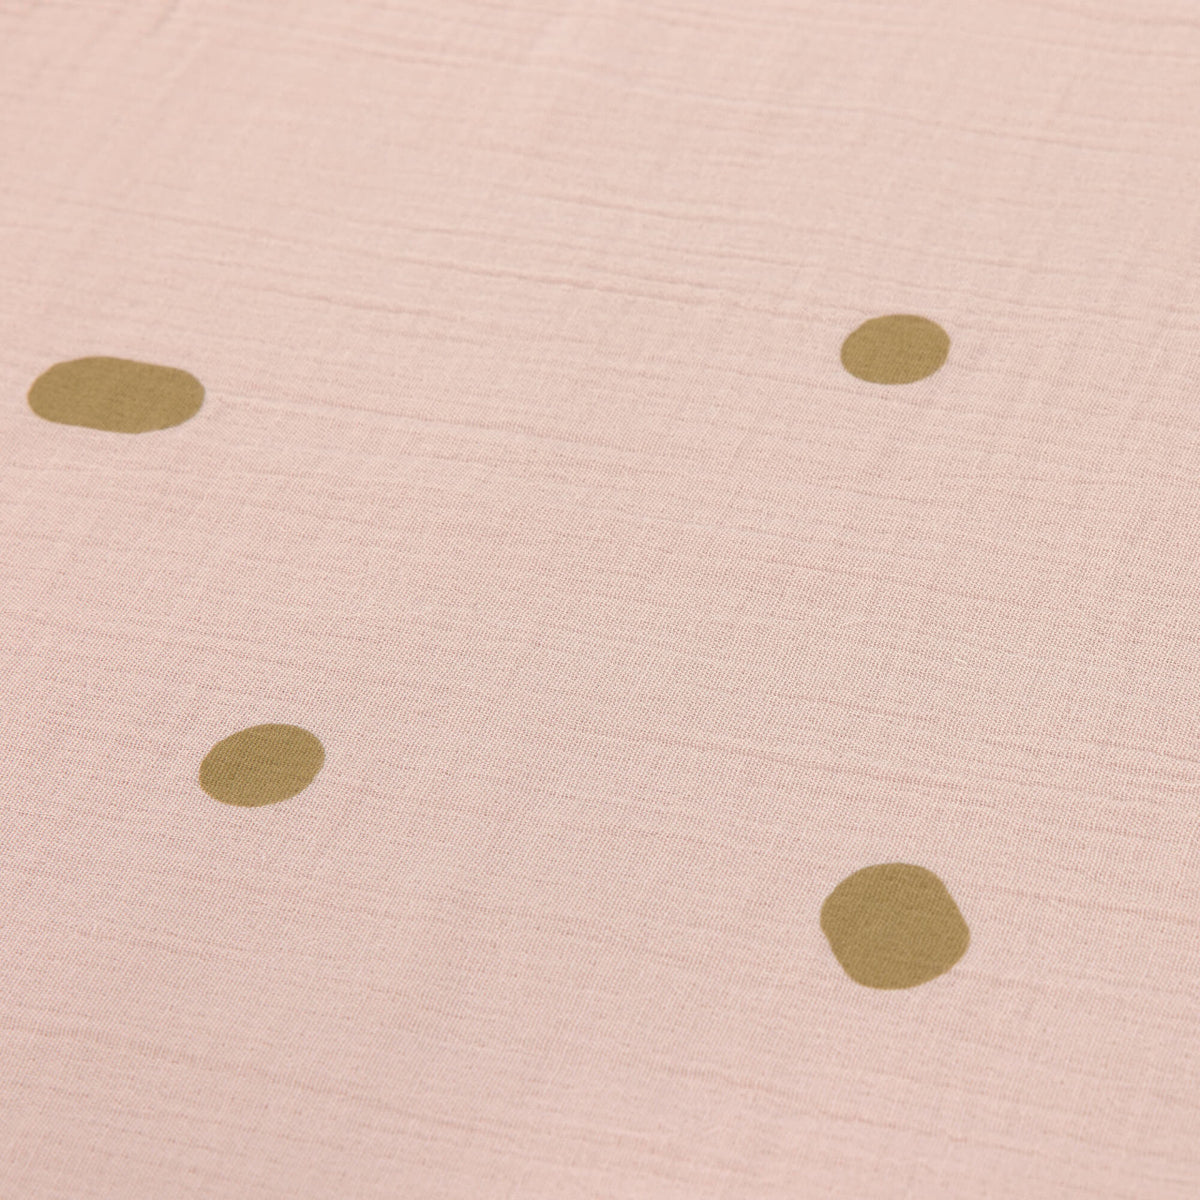 Muslin Blanket GOTS - Powder Pink